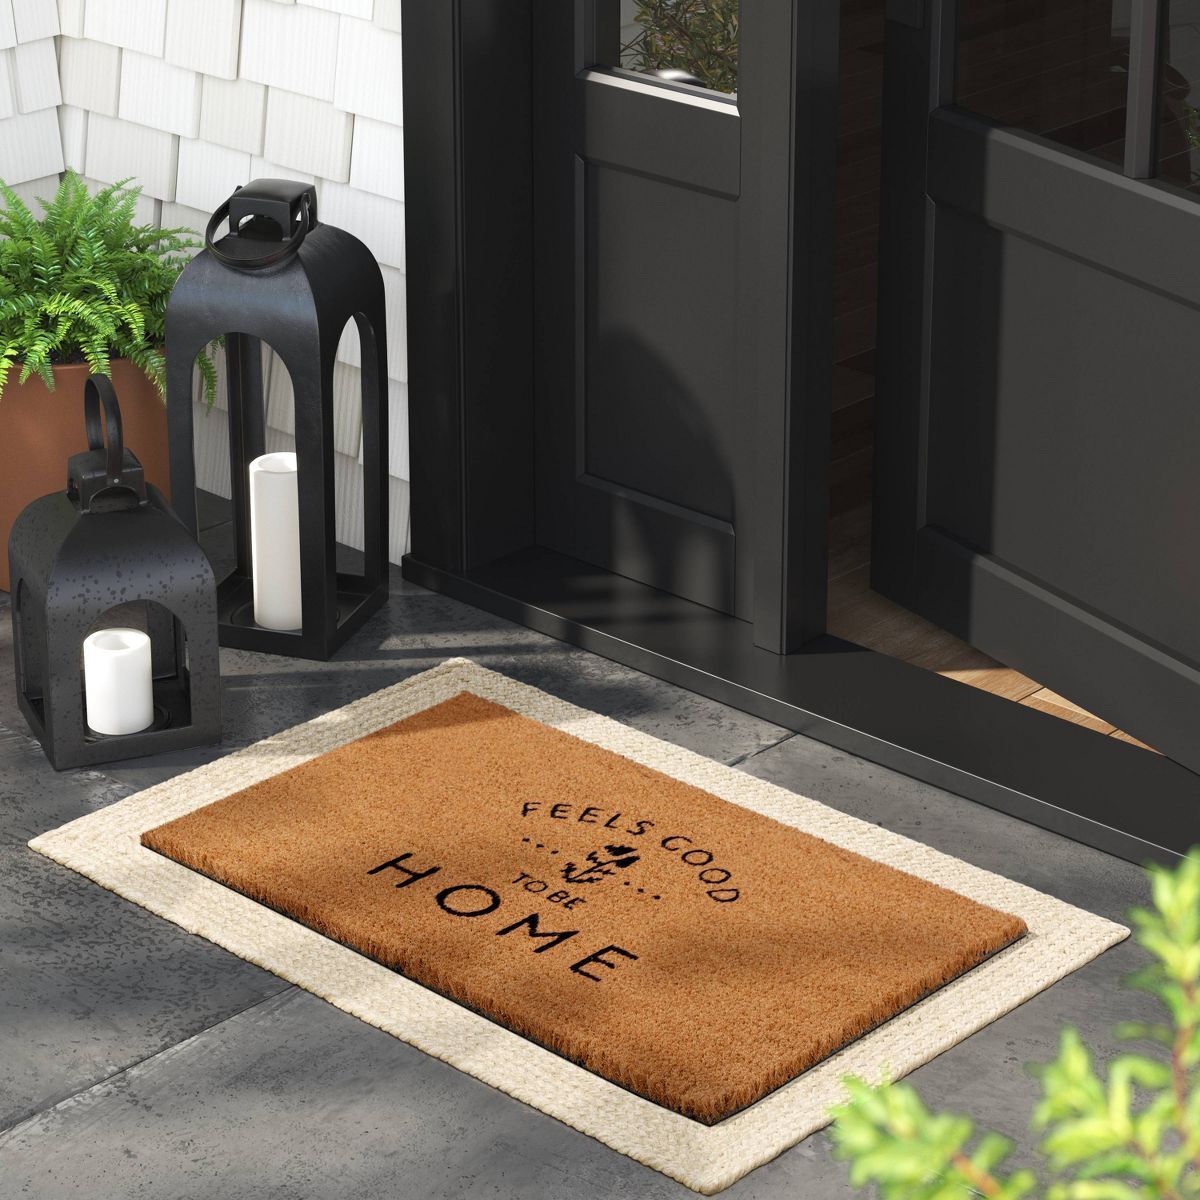 1'6"x2'6" Feels Good to be Home Rectangular Outdoor Door Mat Black - Threshold™ | Target